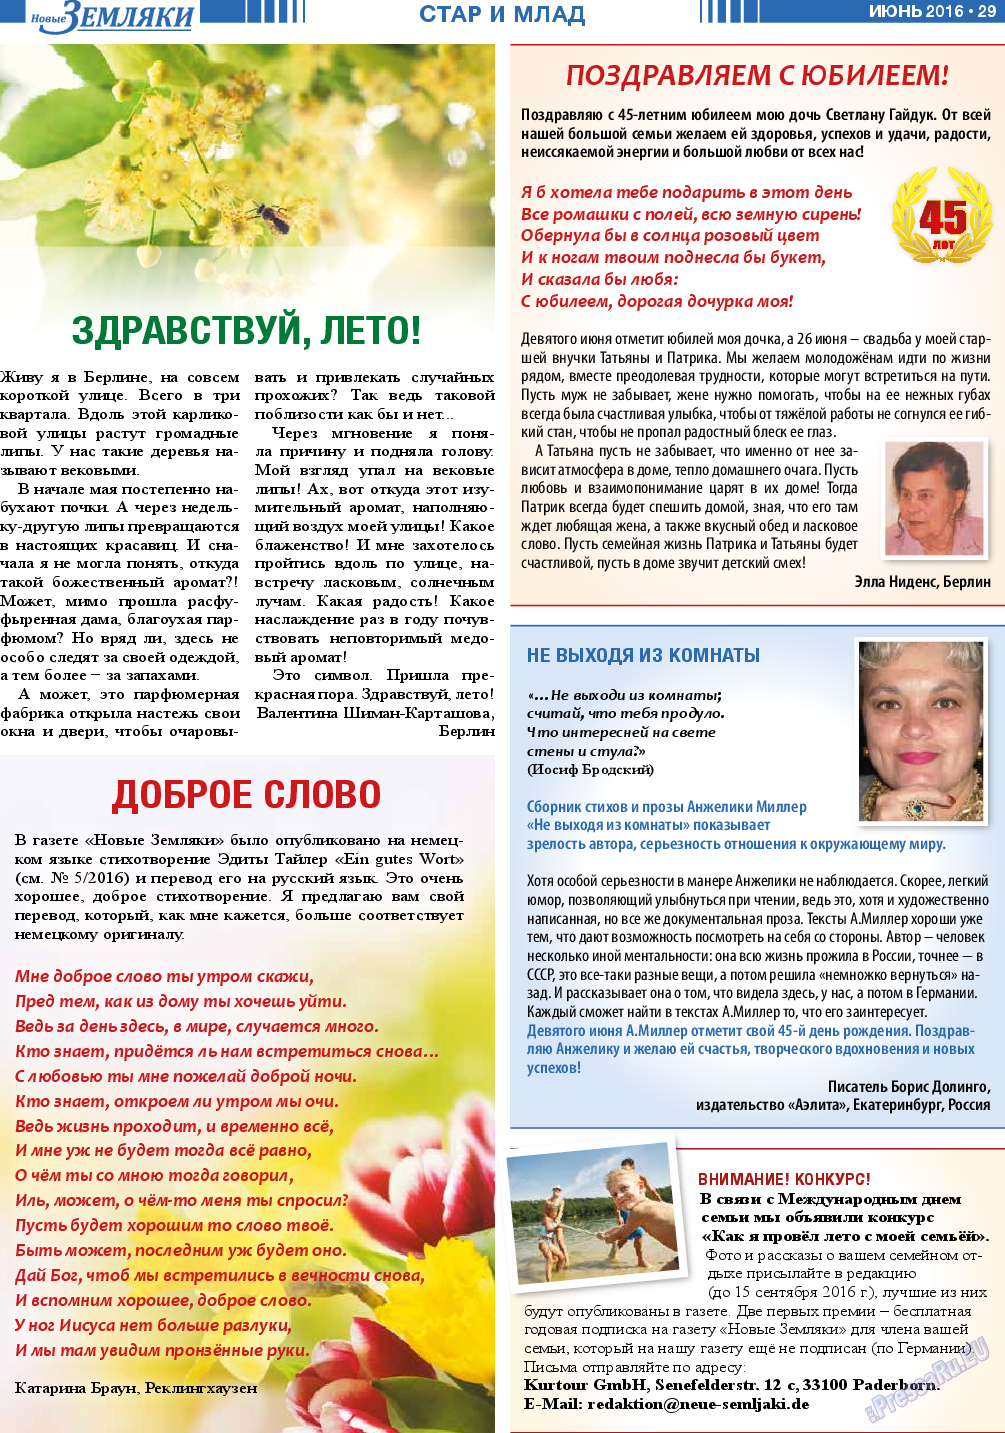 Новые Земляки (газета). 2016 год, номер 6, стр. 29